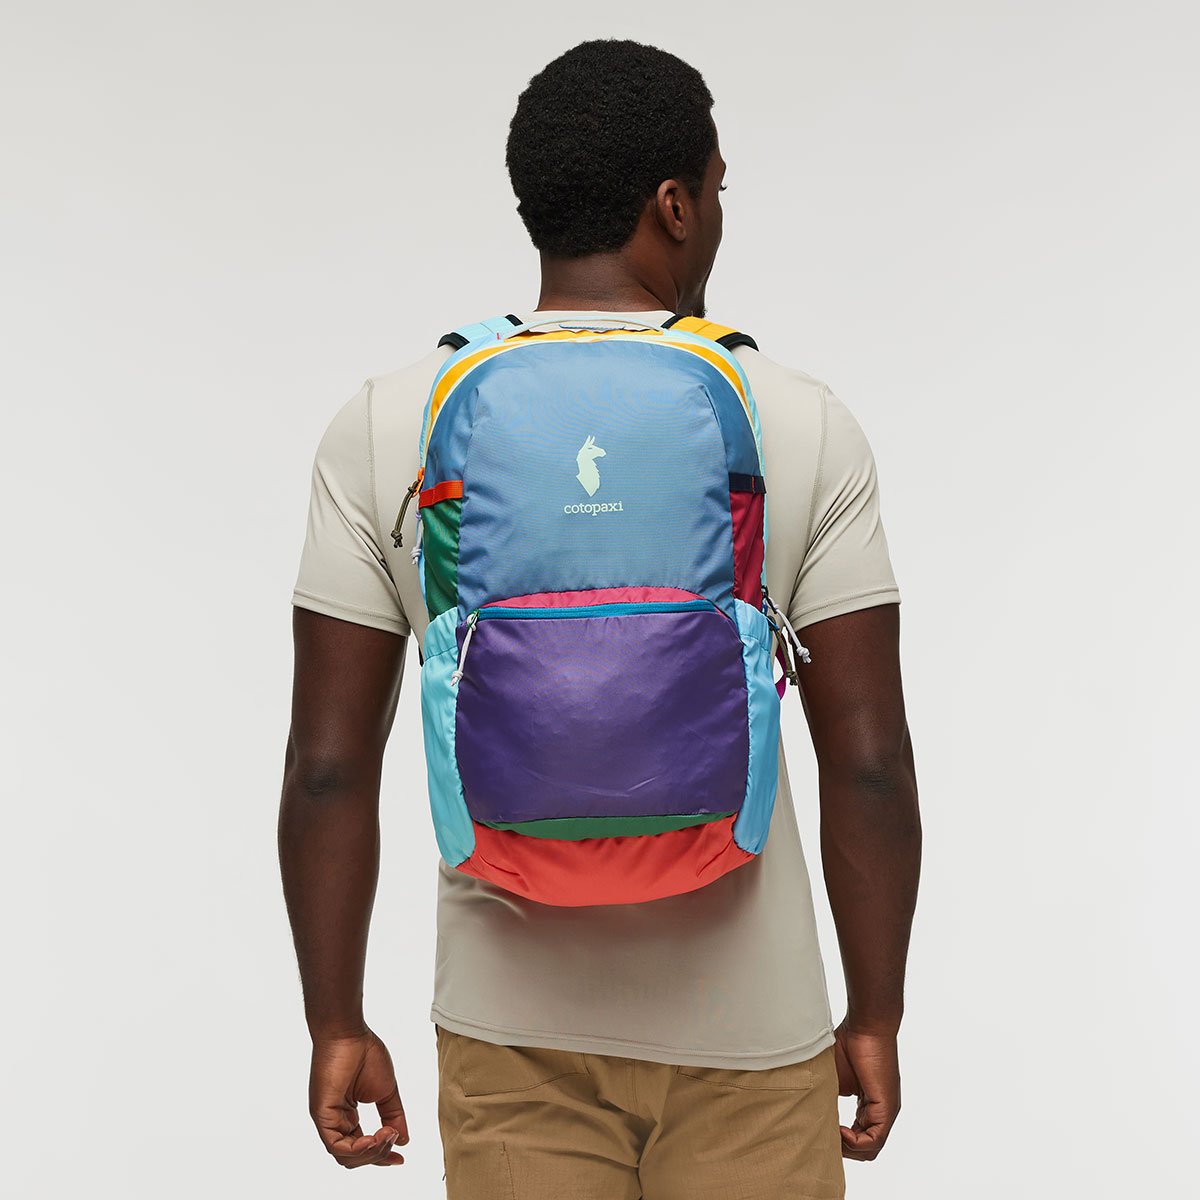 Chiquillo 30L Backpack - Del Día